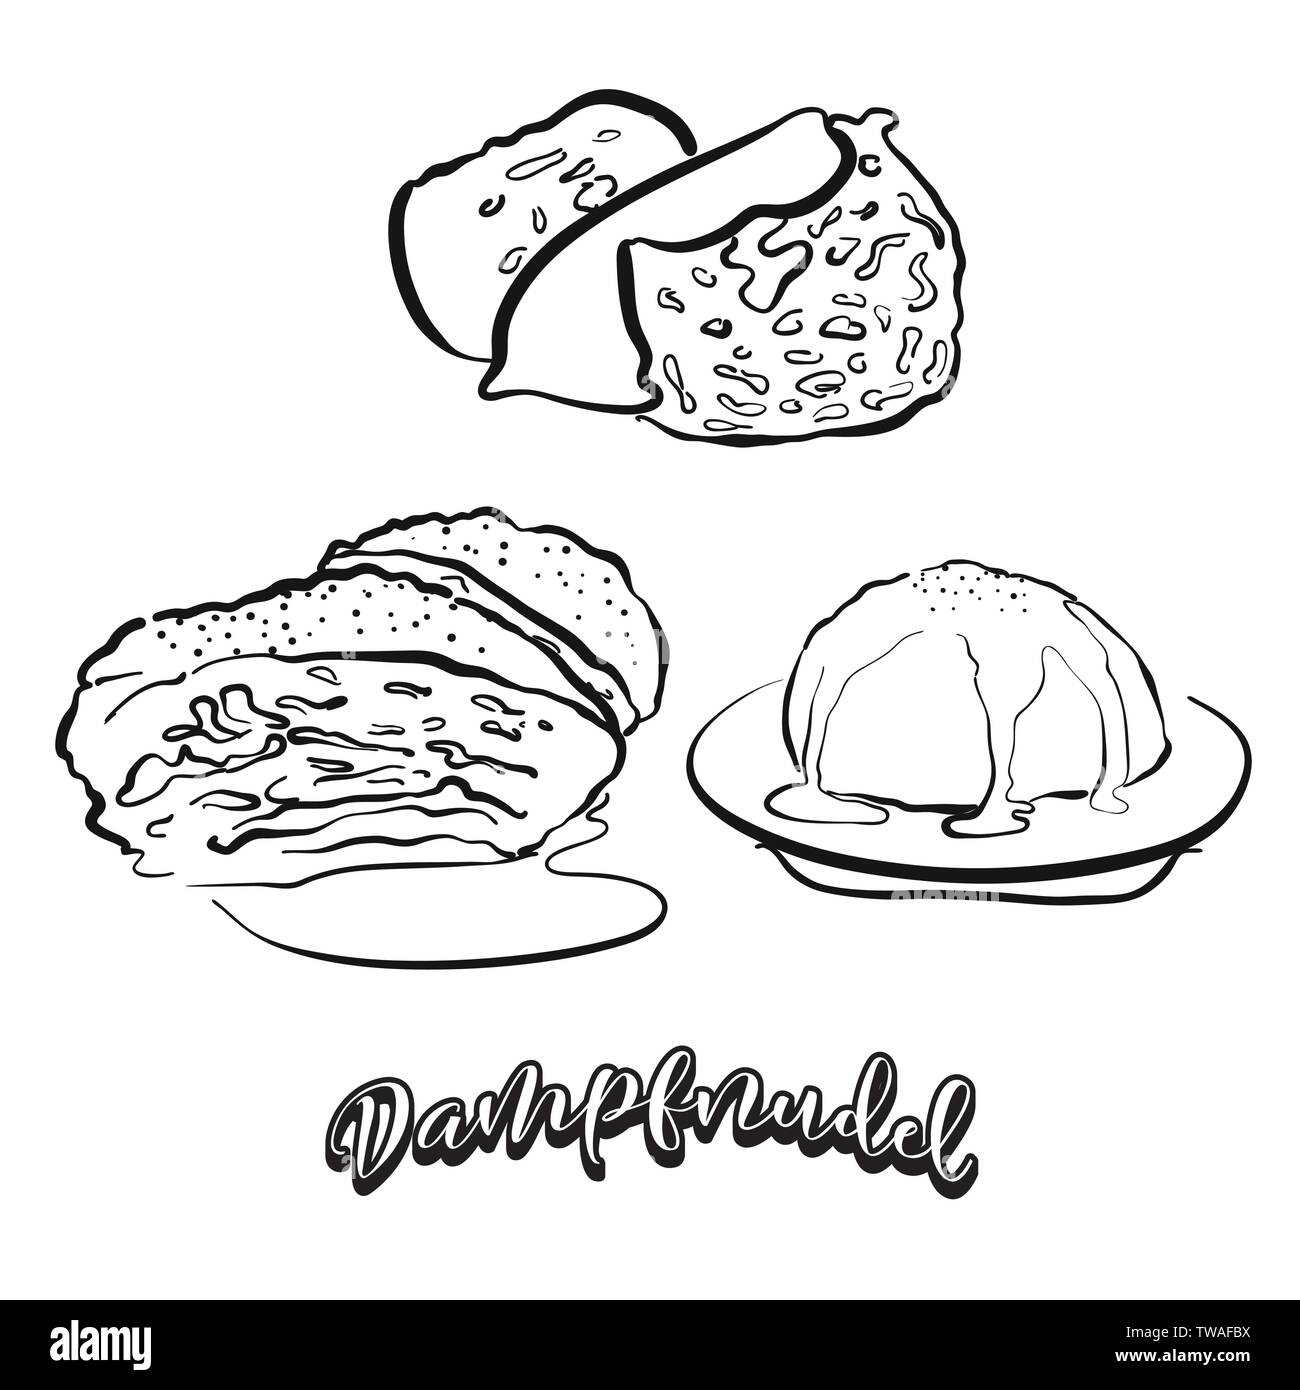 Dampfnudel essen Skizze auf dem Schwarzen Brett. Vektor Zeichnung von süßen Brot, in der Regel in Deutschland bekannt. Essen Abbildung Serie. Stock Vektor